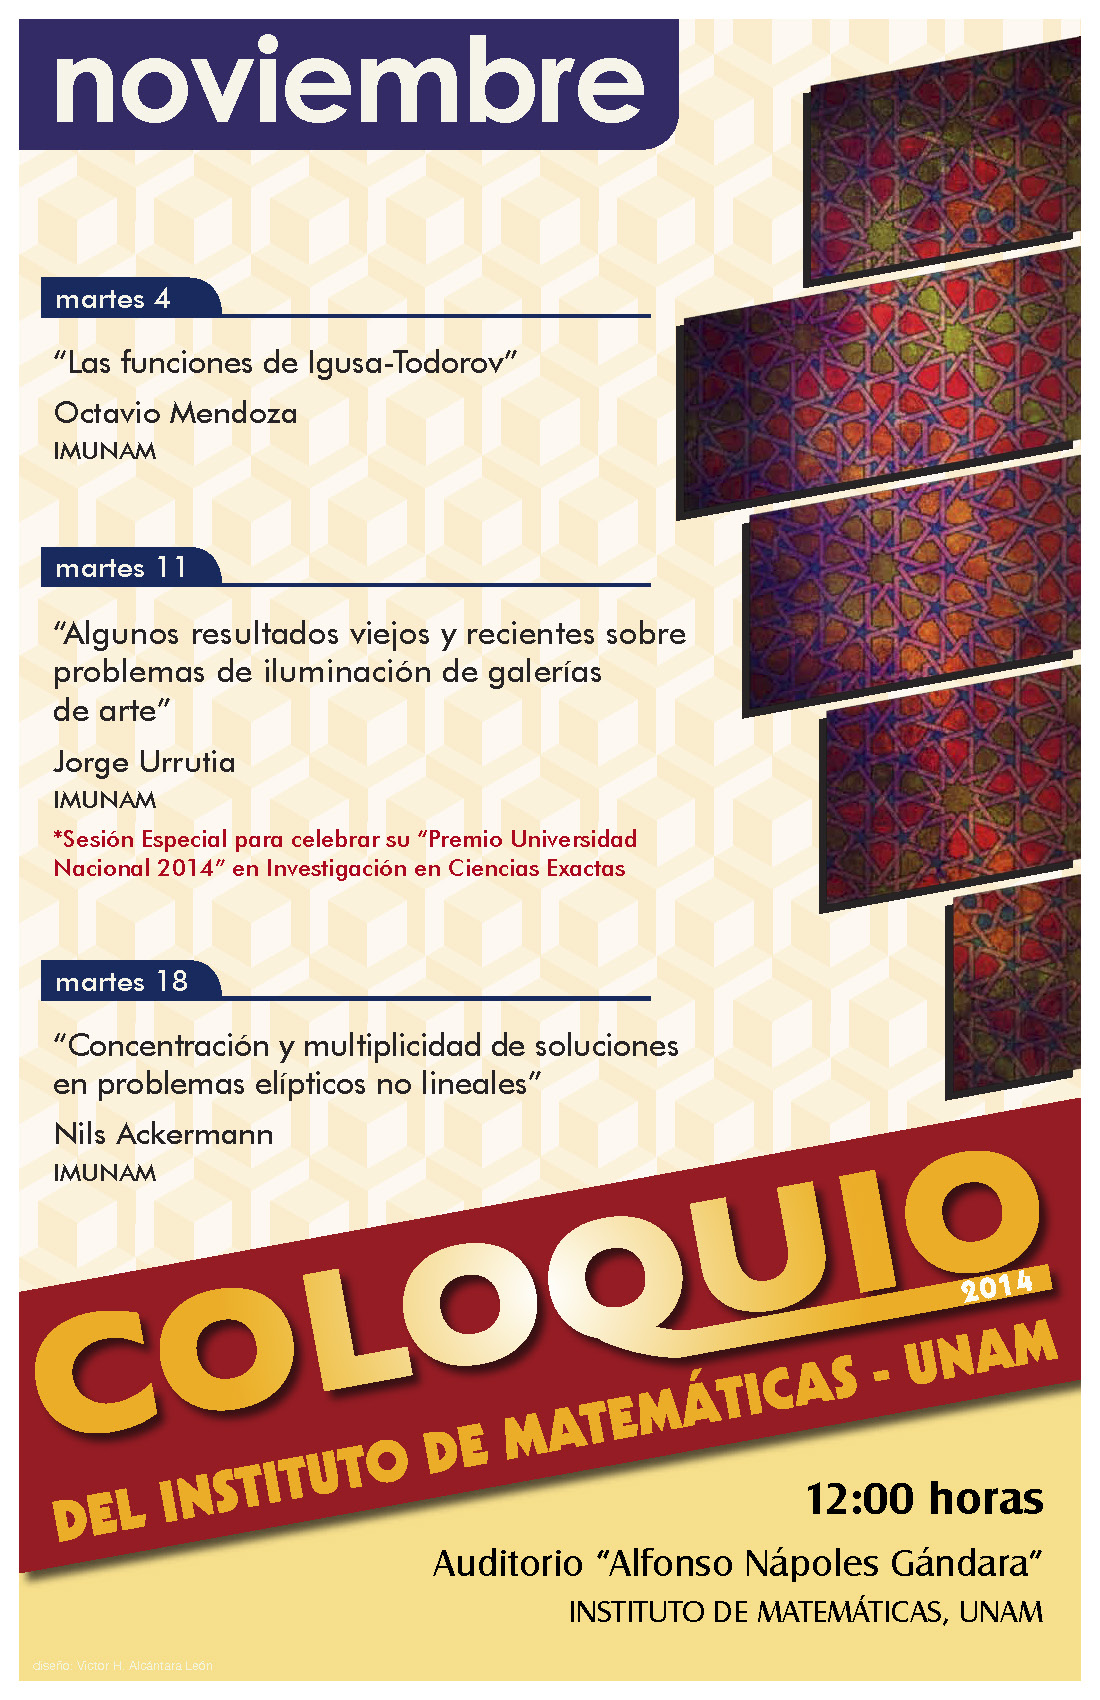  Noviembre: Sesiones para Coloquio